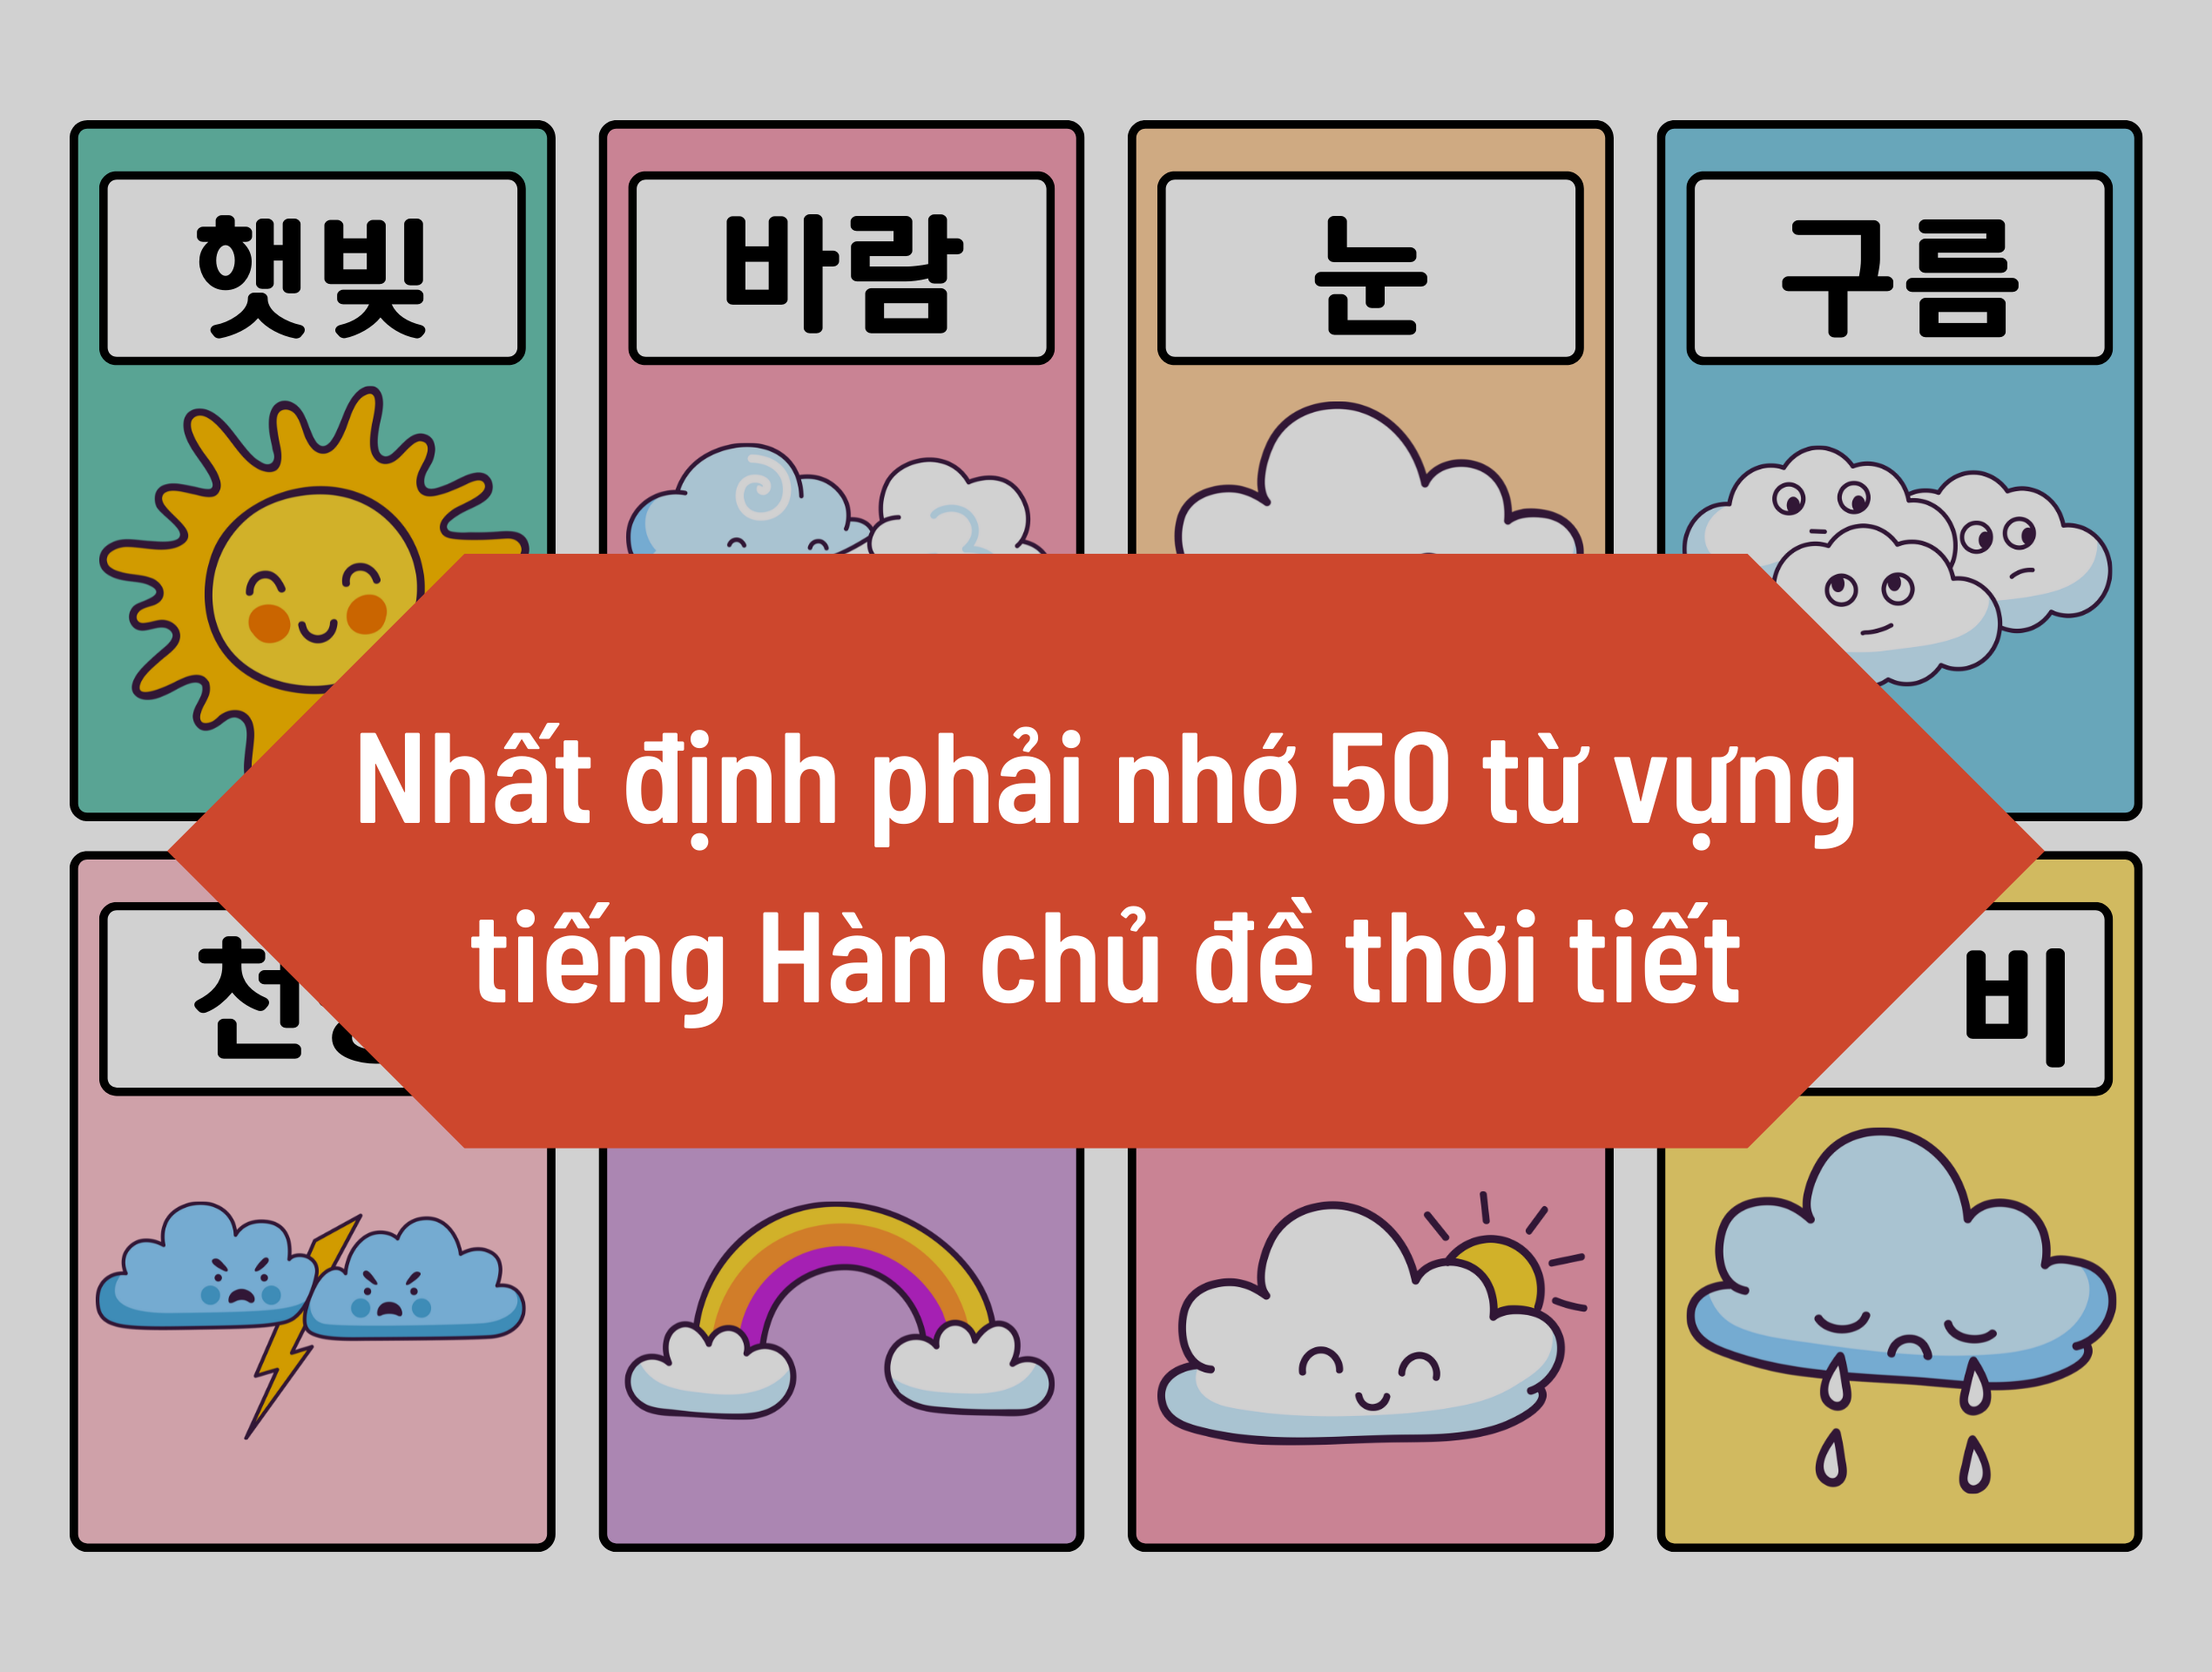 Nhất định phải nhớ 50 từ vựng tiếng Hàn chủ đề thời tiết